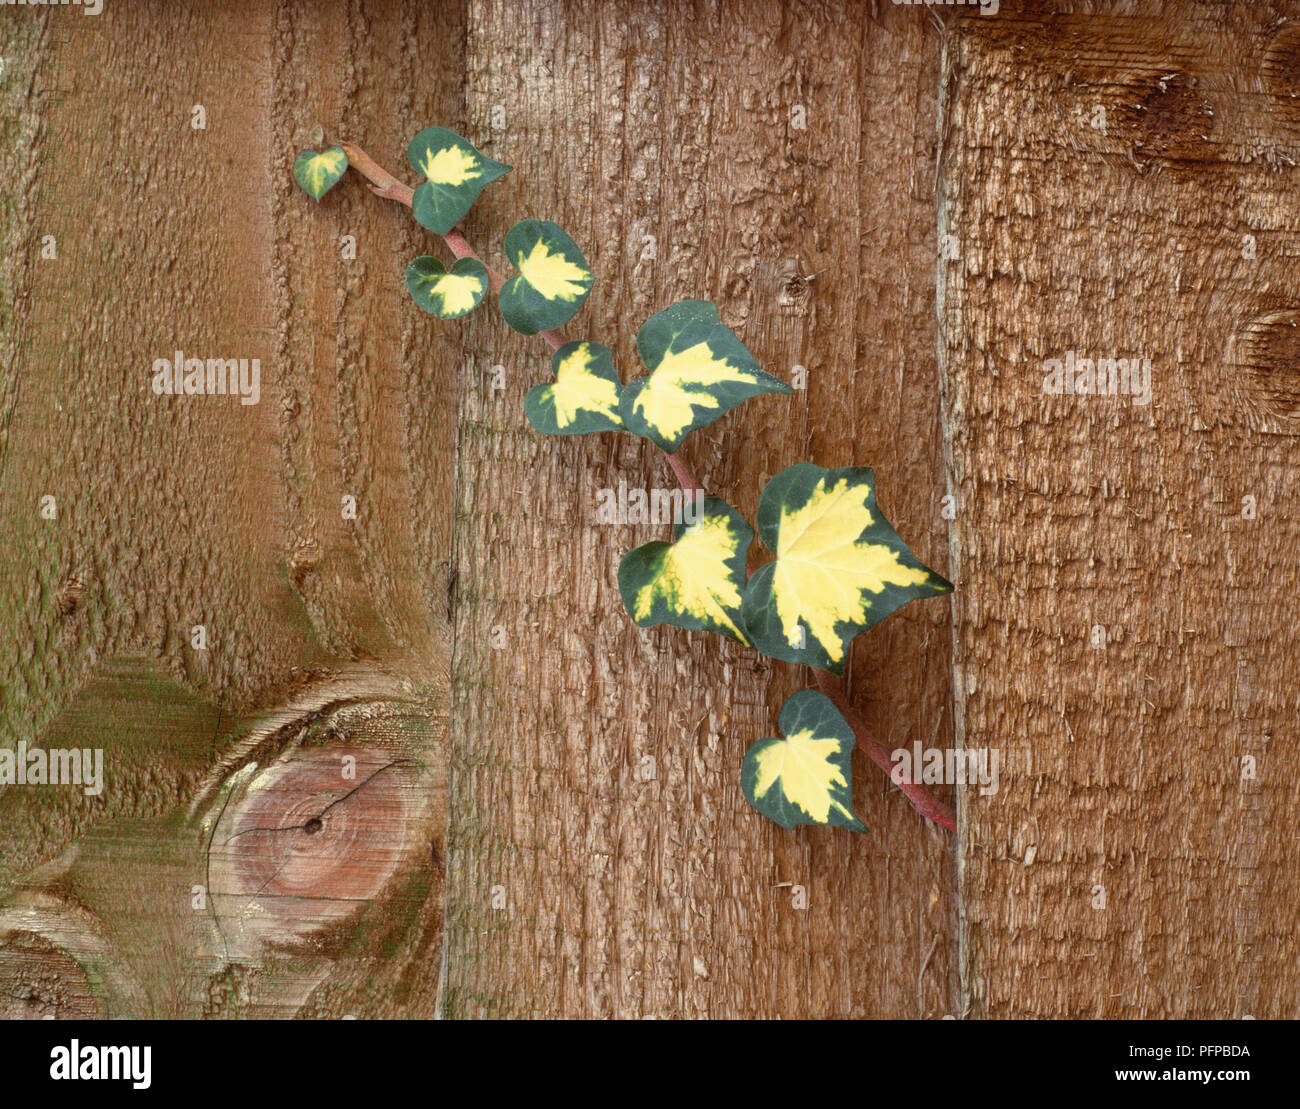 Hedera sp., gelb-grünen Blätter des Efeus Kriechen durch die Lücke zwischen Holzplatten und Anfang zu klettern. Stockfoto